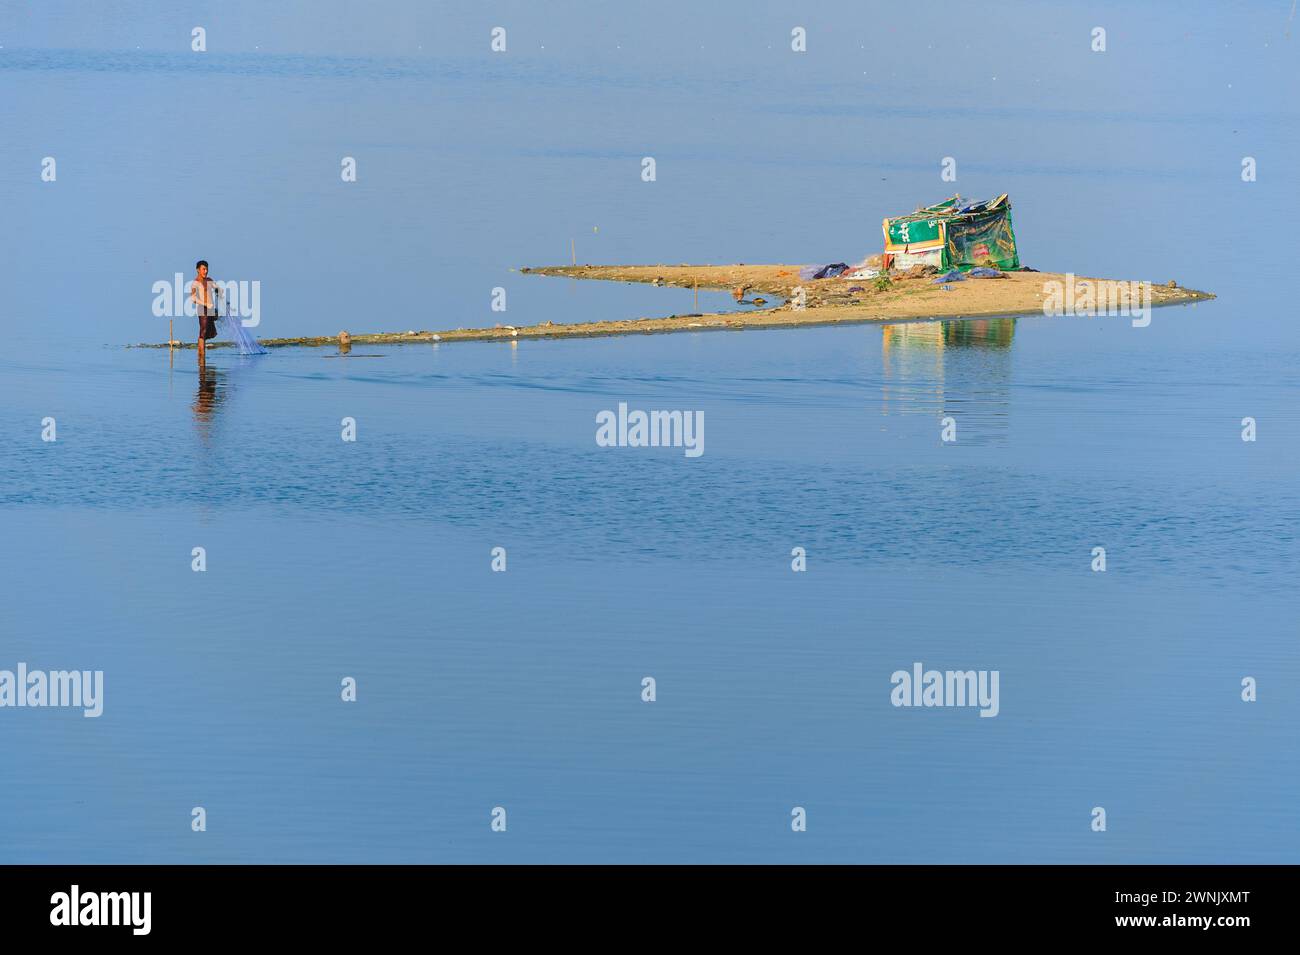 13 febbraio 2016: I pescatori preferiscono il wading Waist in profondità nelle acque fangose alla ricerca di pesci nel lago Taungthaman vicino ad Amarapura in Myanmar. Foto Stock